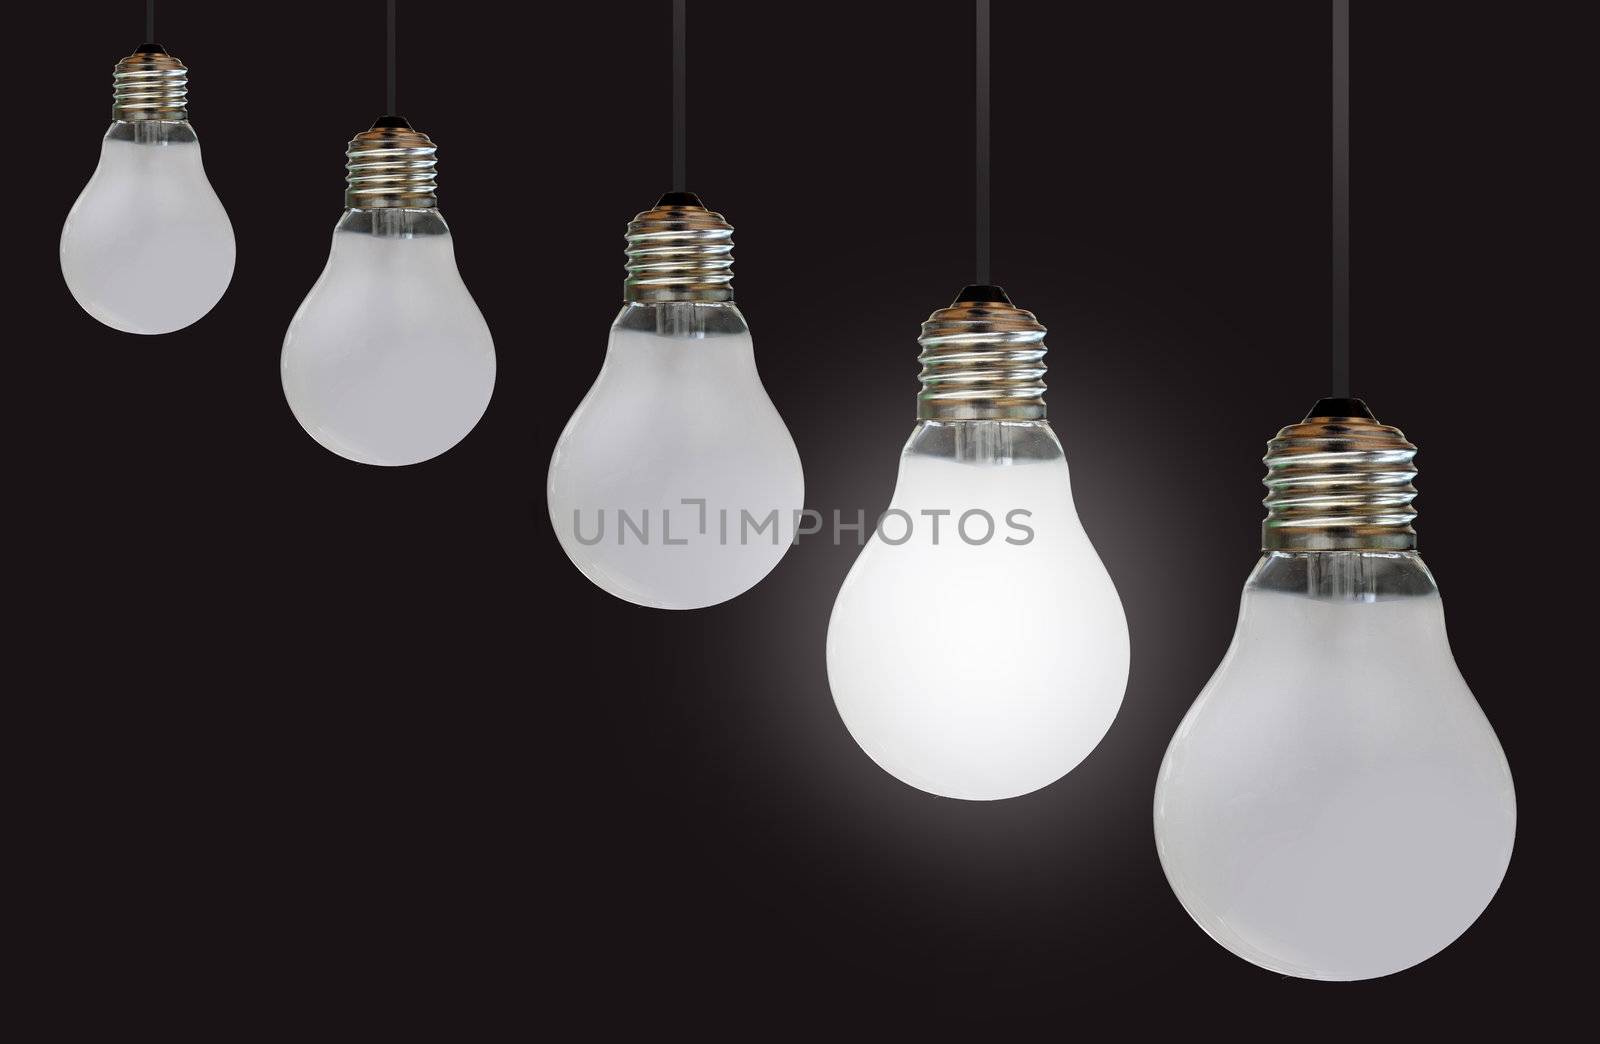 One lit bulb amongst a row of unlit bulbs